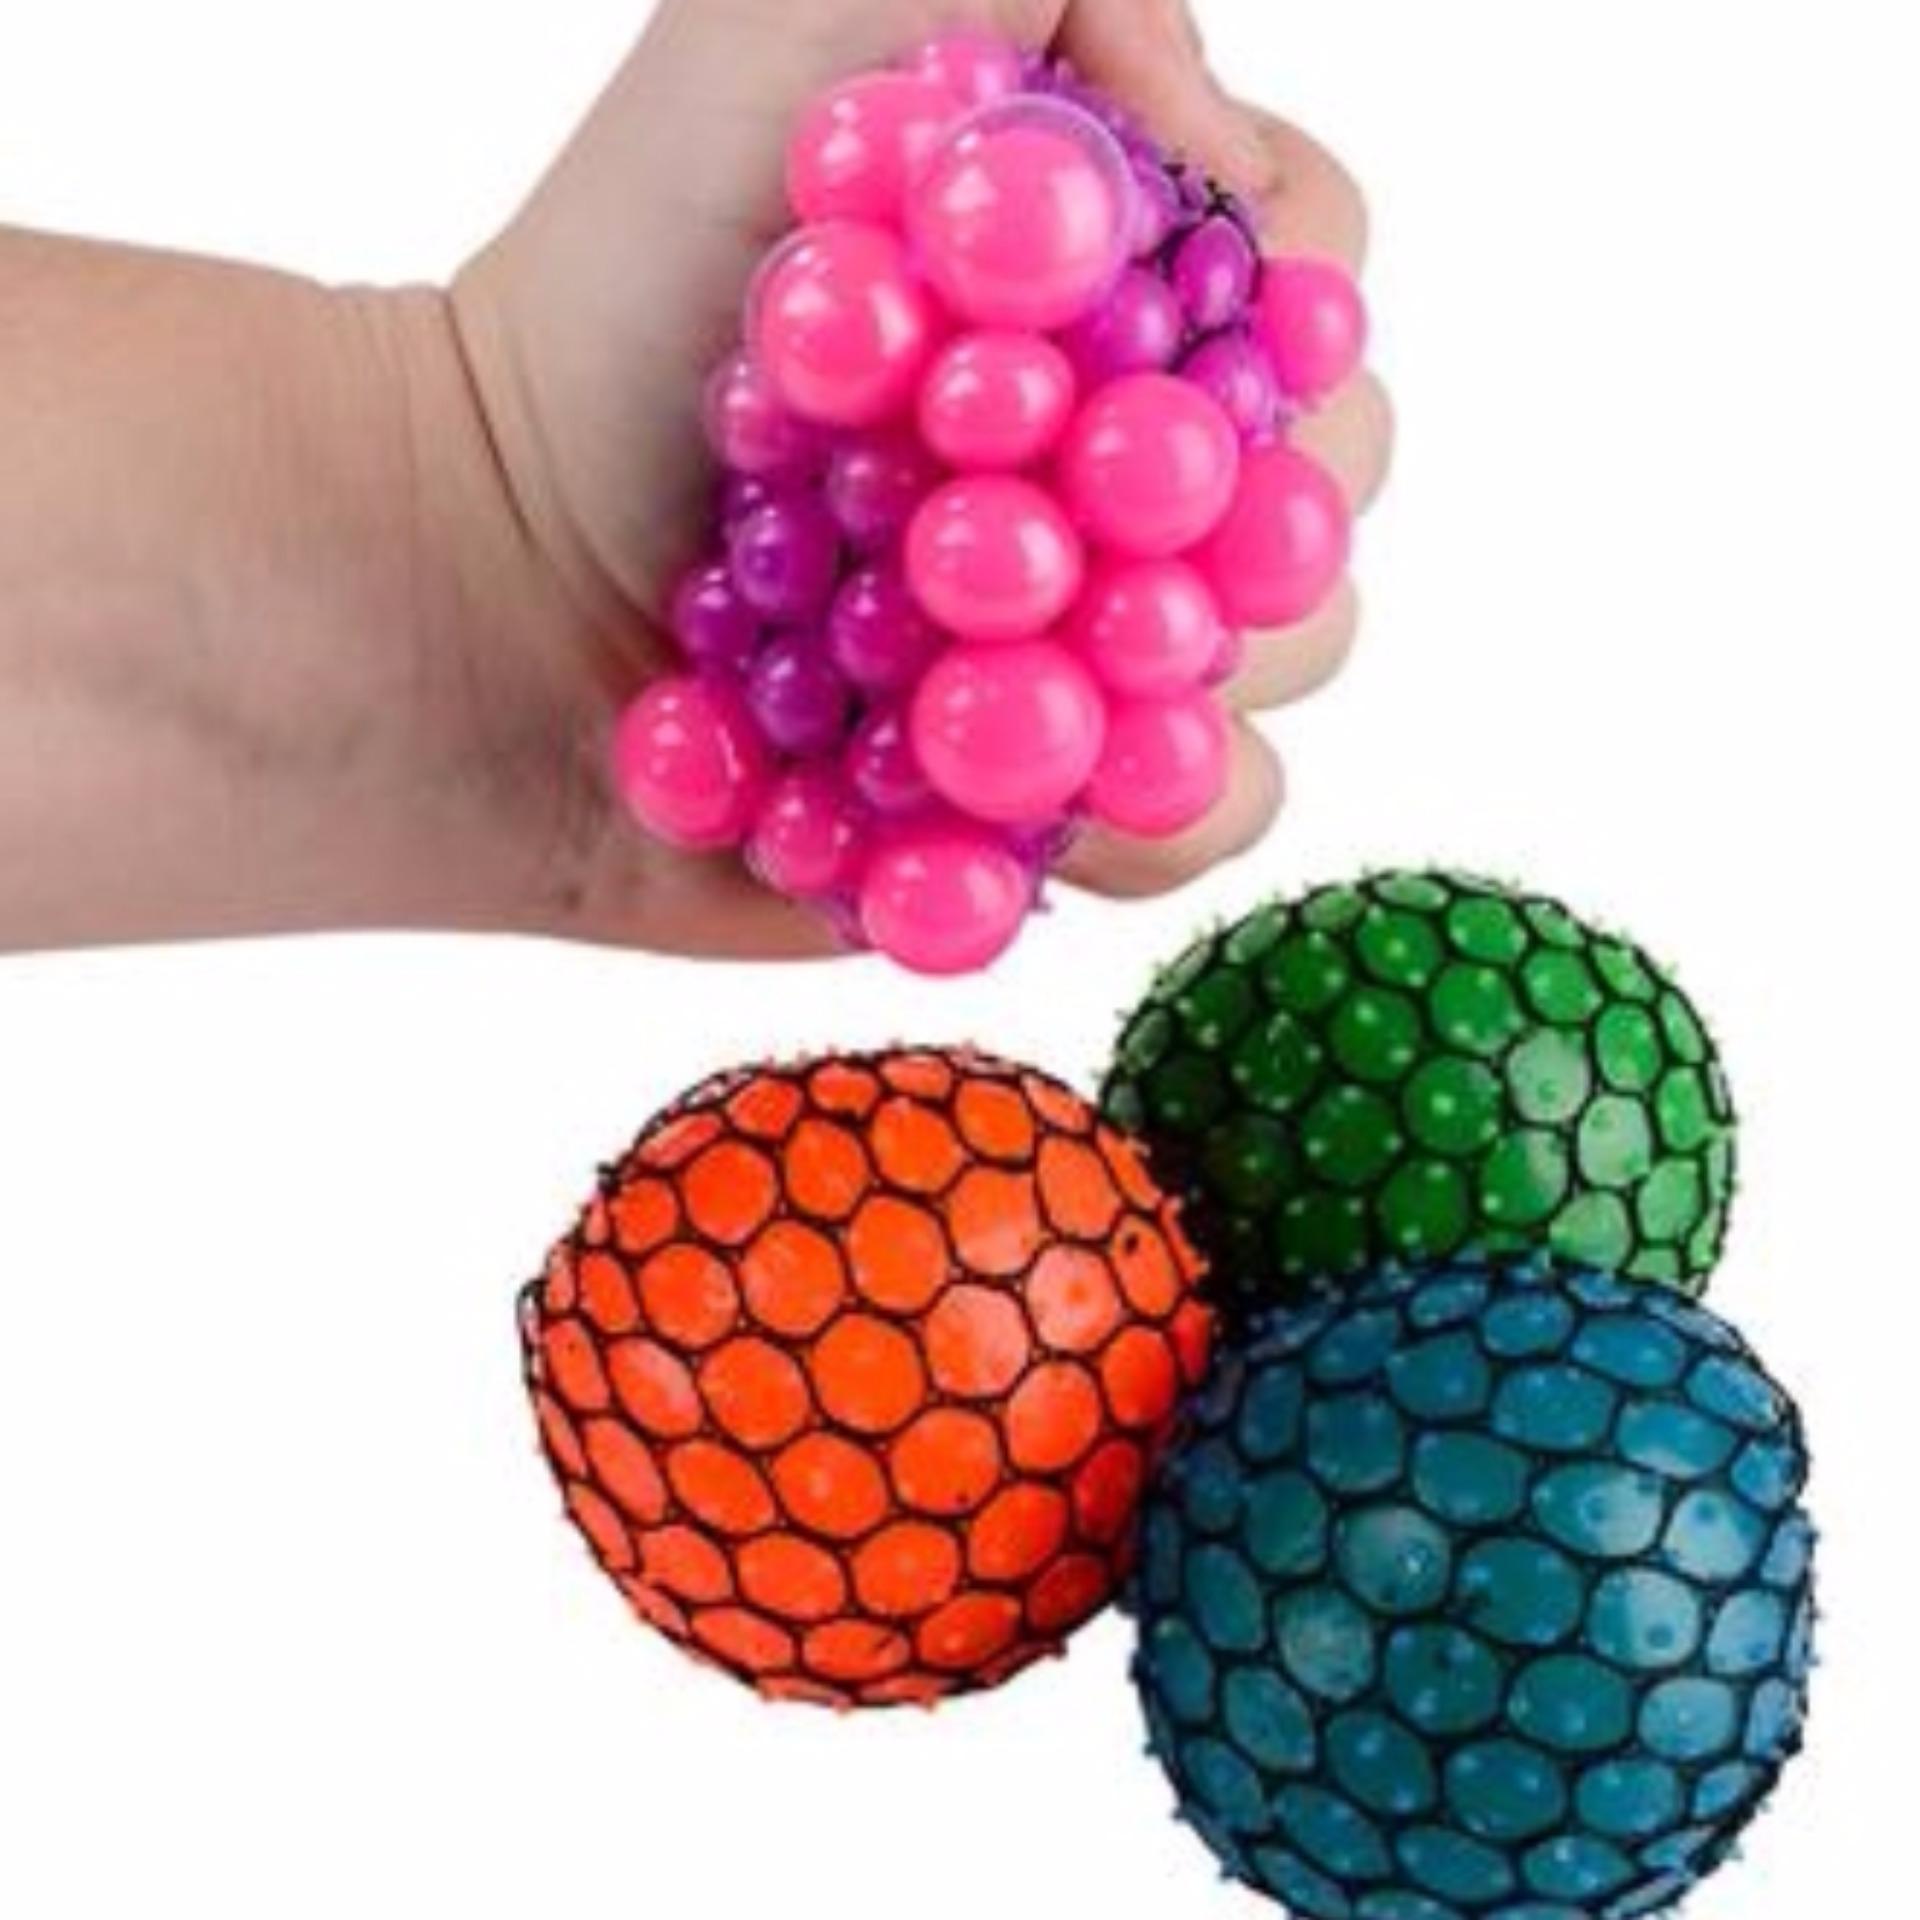 2 Quả Trứng Lưới - Stress Ball